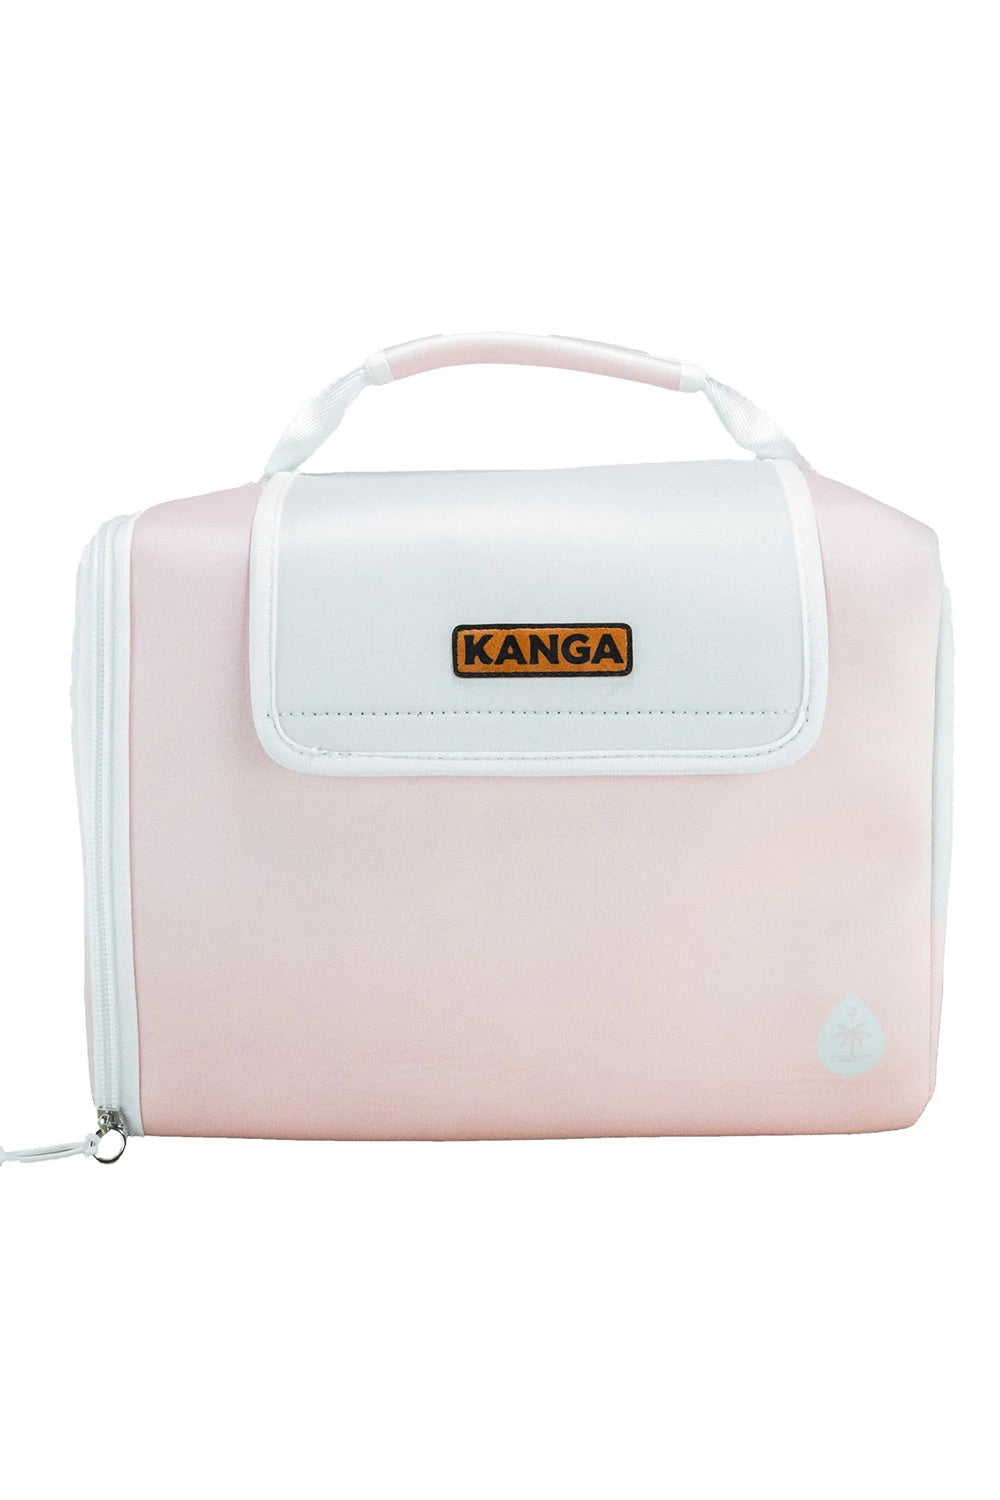 12-Pack Kase Mates – Kanga Coolers